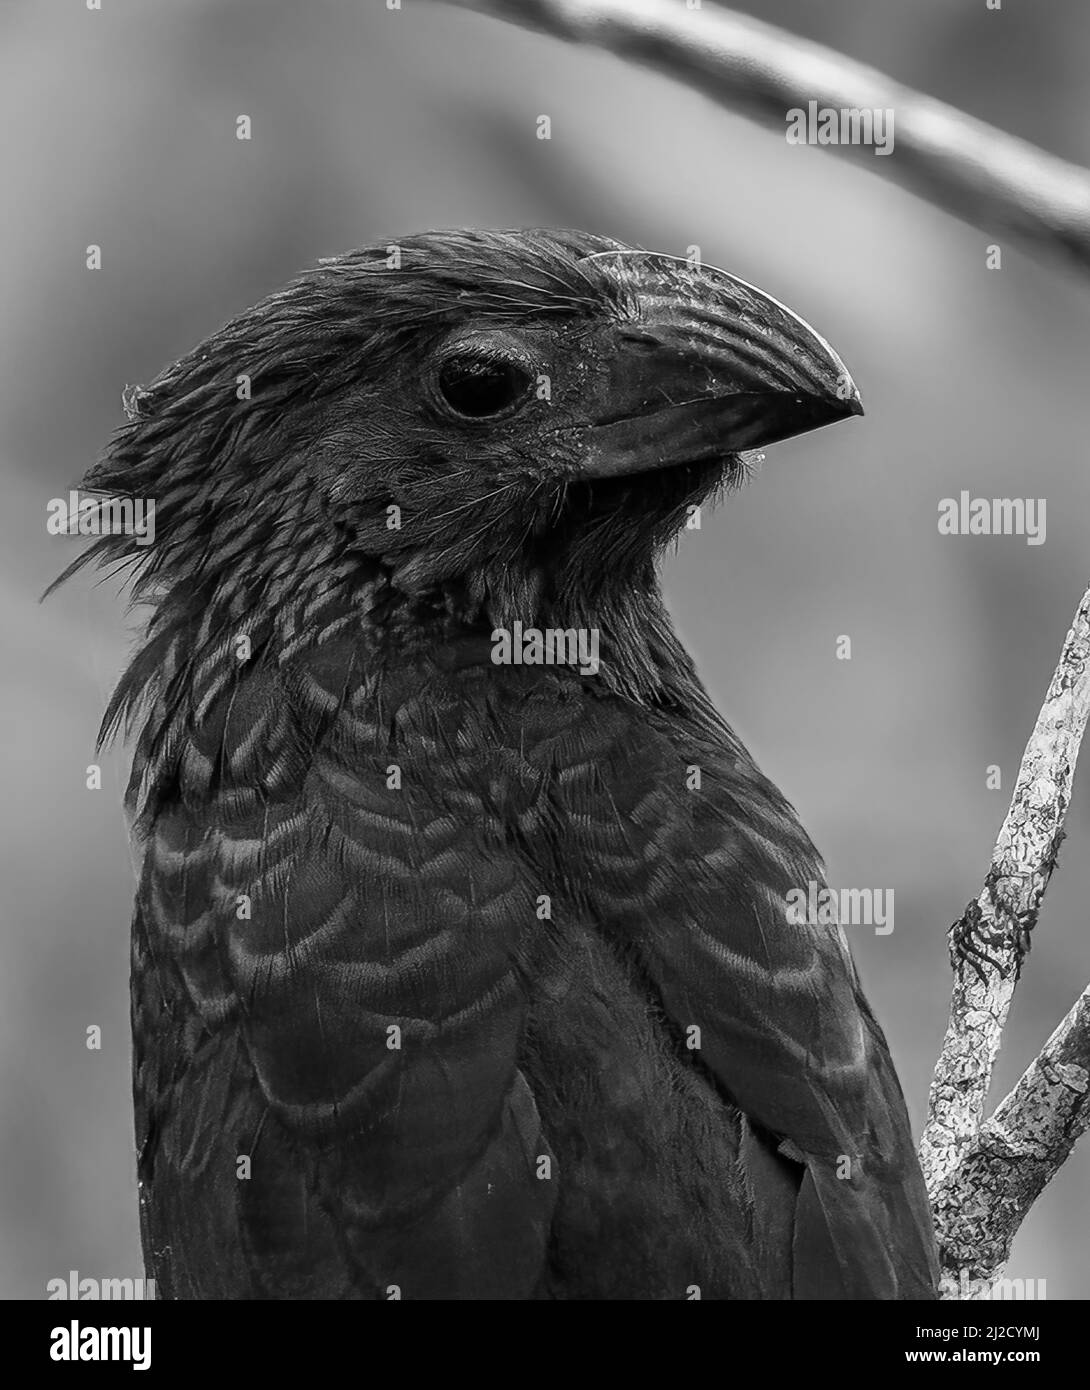 Gove-Billed Ani Bird, Crotophaga sulcirostris in Panama, immagine bianca e nera Foto Stock